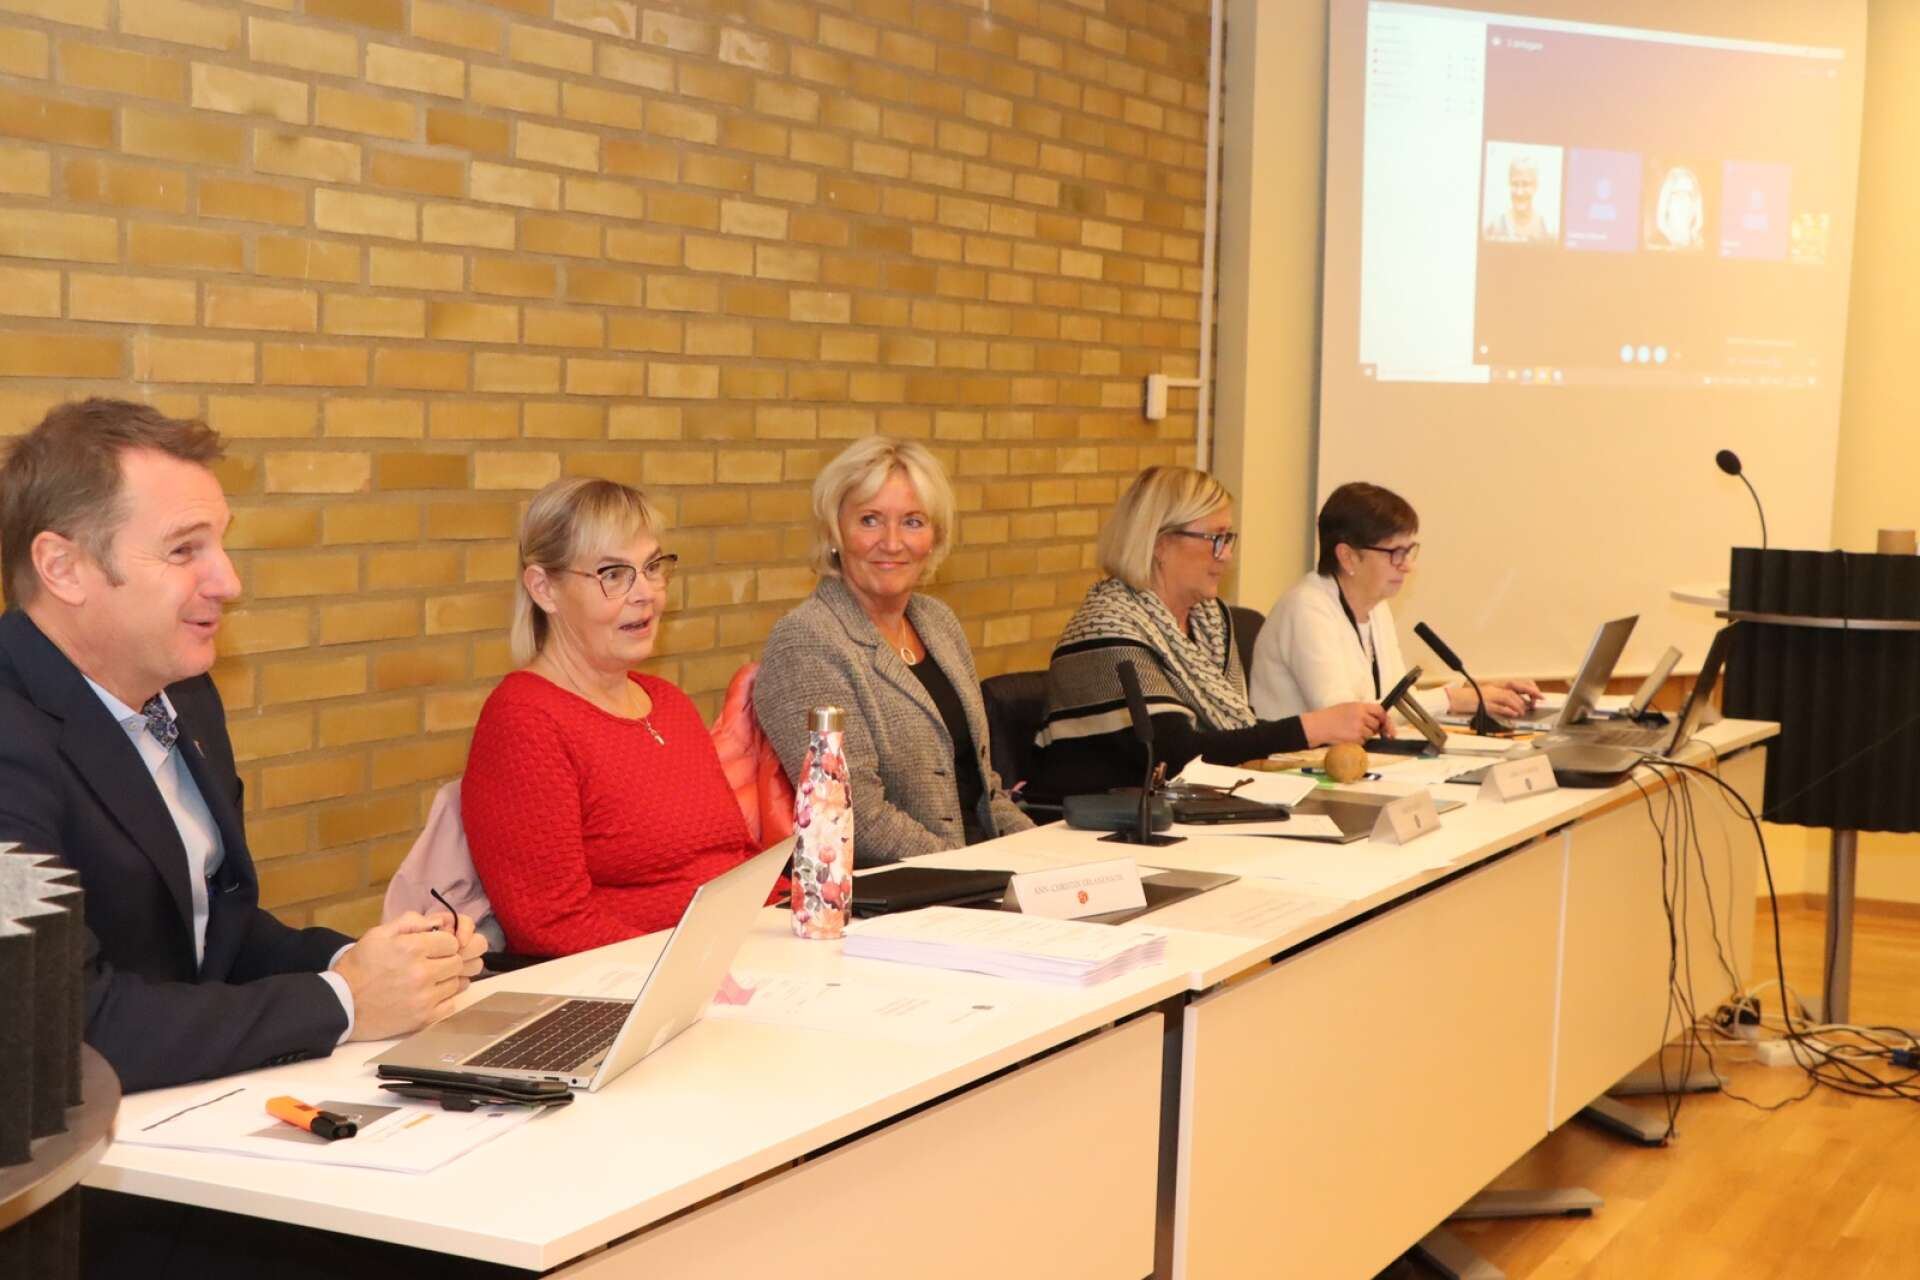 Det är nu tre kvinnor i fullmäktiges presidium: Ann-Christin Erlandsson (S), Kerstin Isaksson (M) och Maria Gustafsson (M). Till vänster ses kommundirektör Mats Öman och längst till höger ses kommunsekreterare Britt-Marie Nilsson. 
